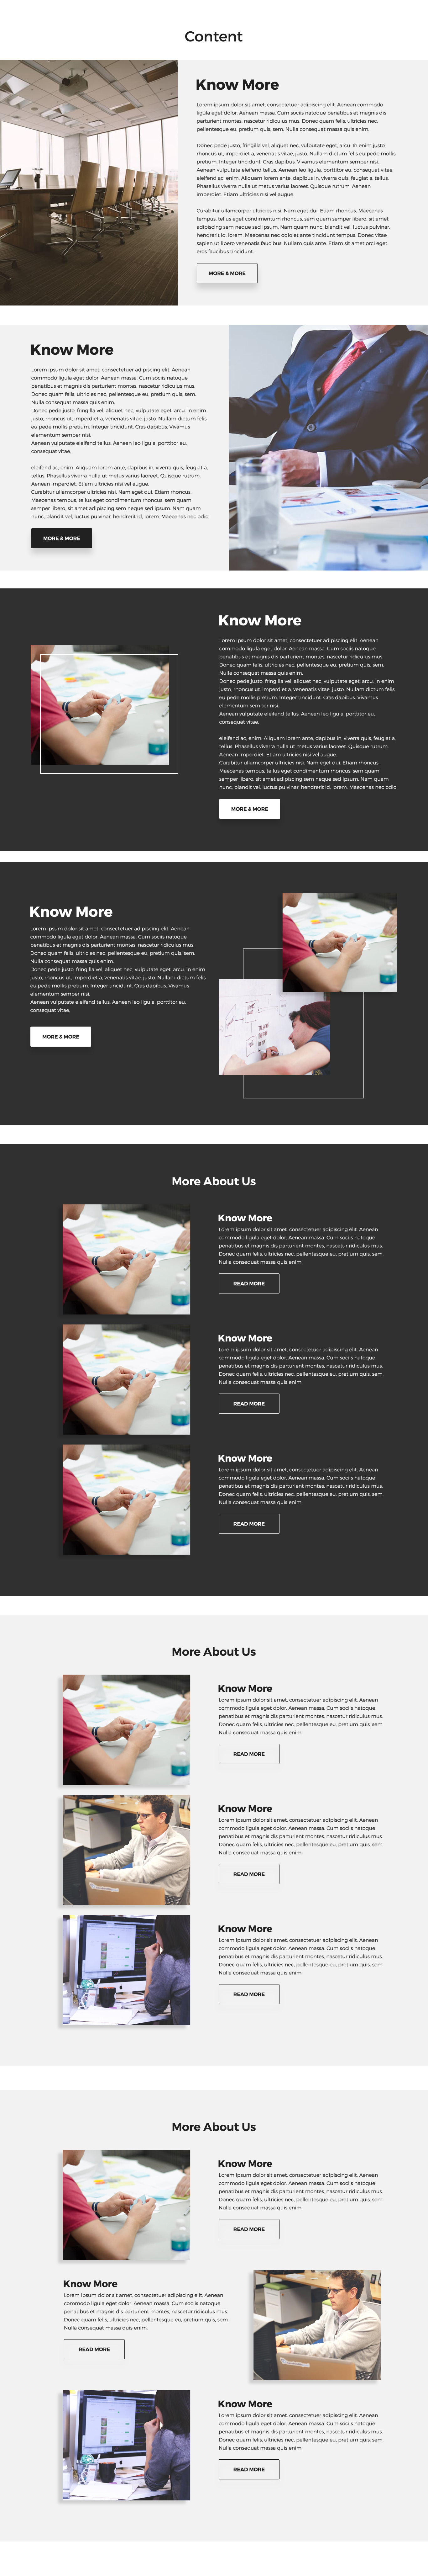 非常完整的一套网页设计 UI 套件 Landing Page UI Kit插图(3)